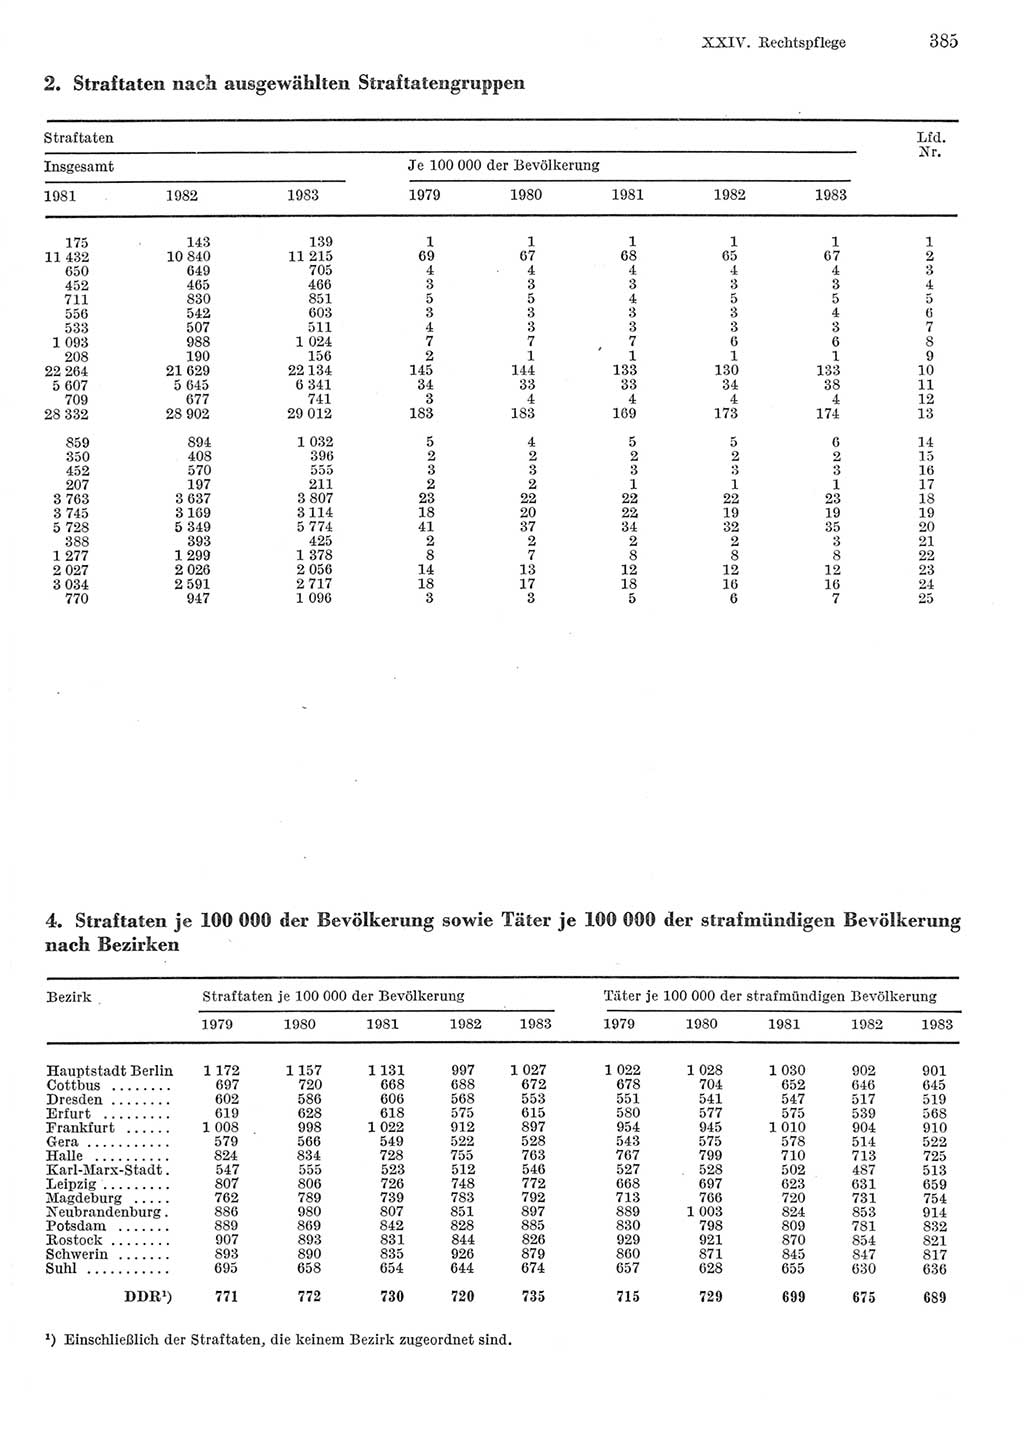 Statistisches Jahrbuch der Deutschen Demokratischen Republik (DDR) 1984, Seite 385 (Stat. Jb. DDR 1984, S. 385)